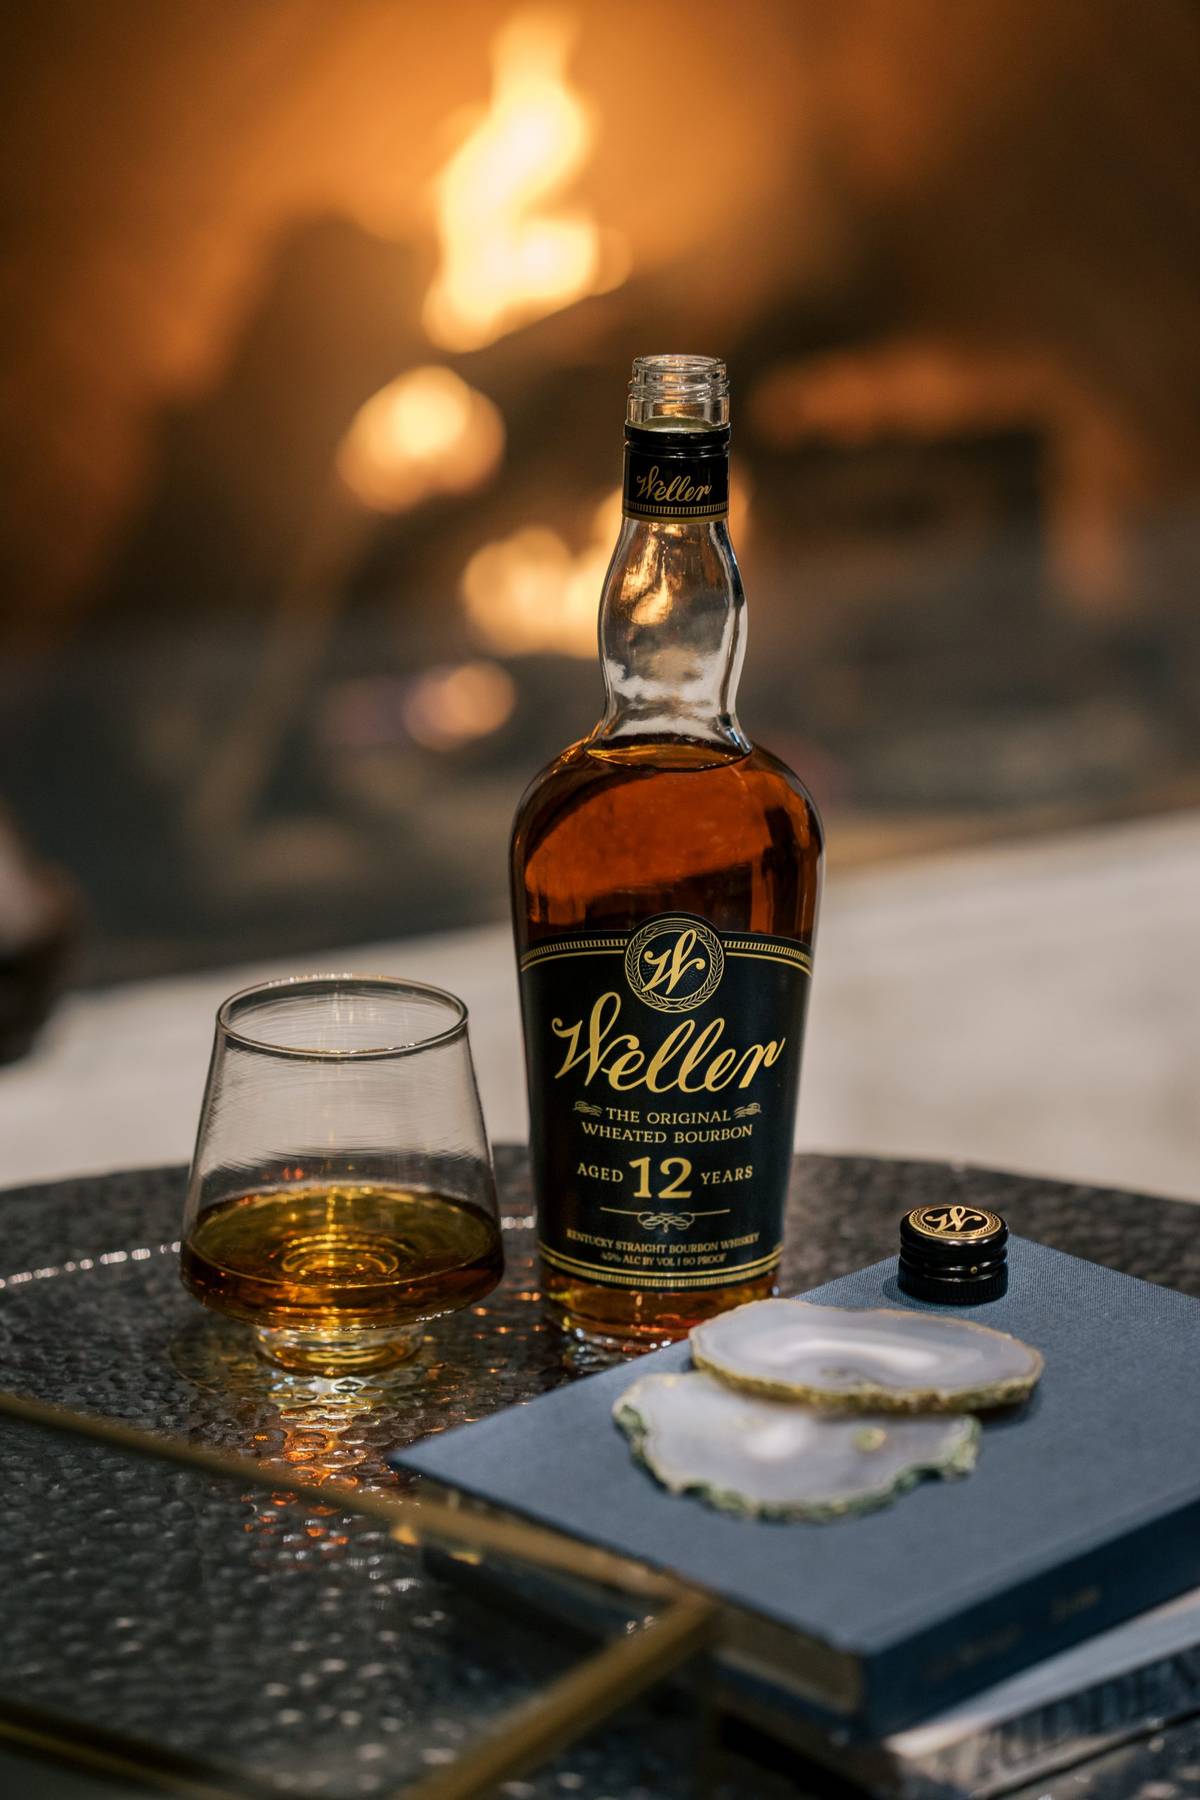 Les trois bourbons de la Maison du Whisky pour la fête des Pères